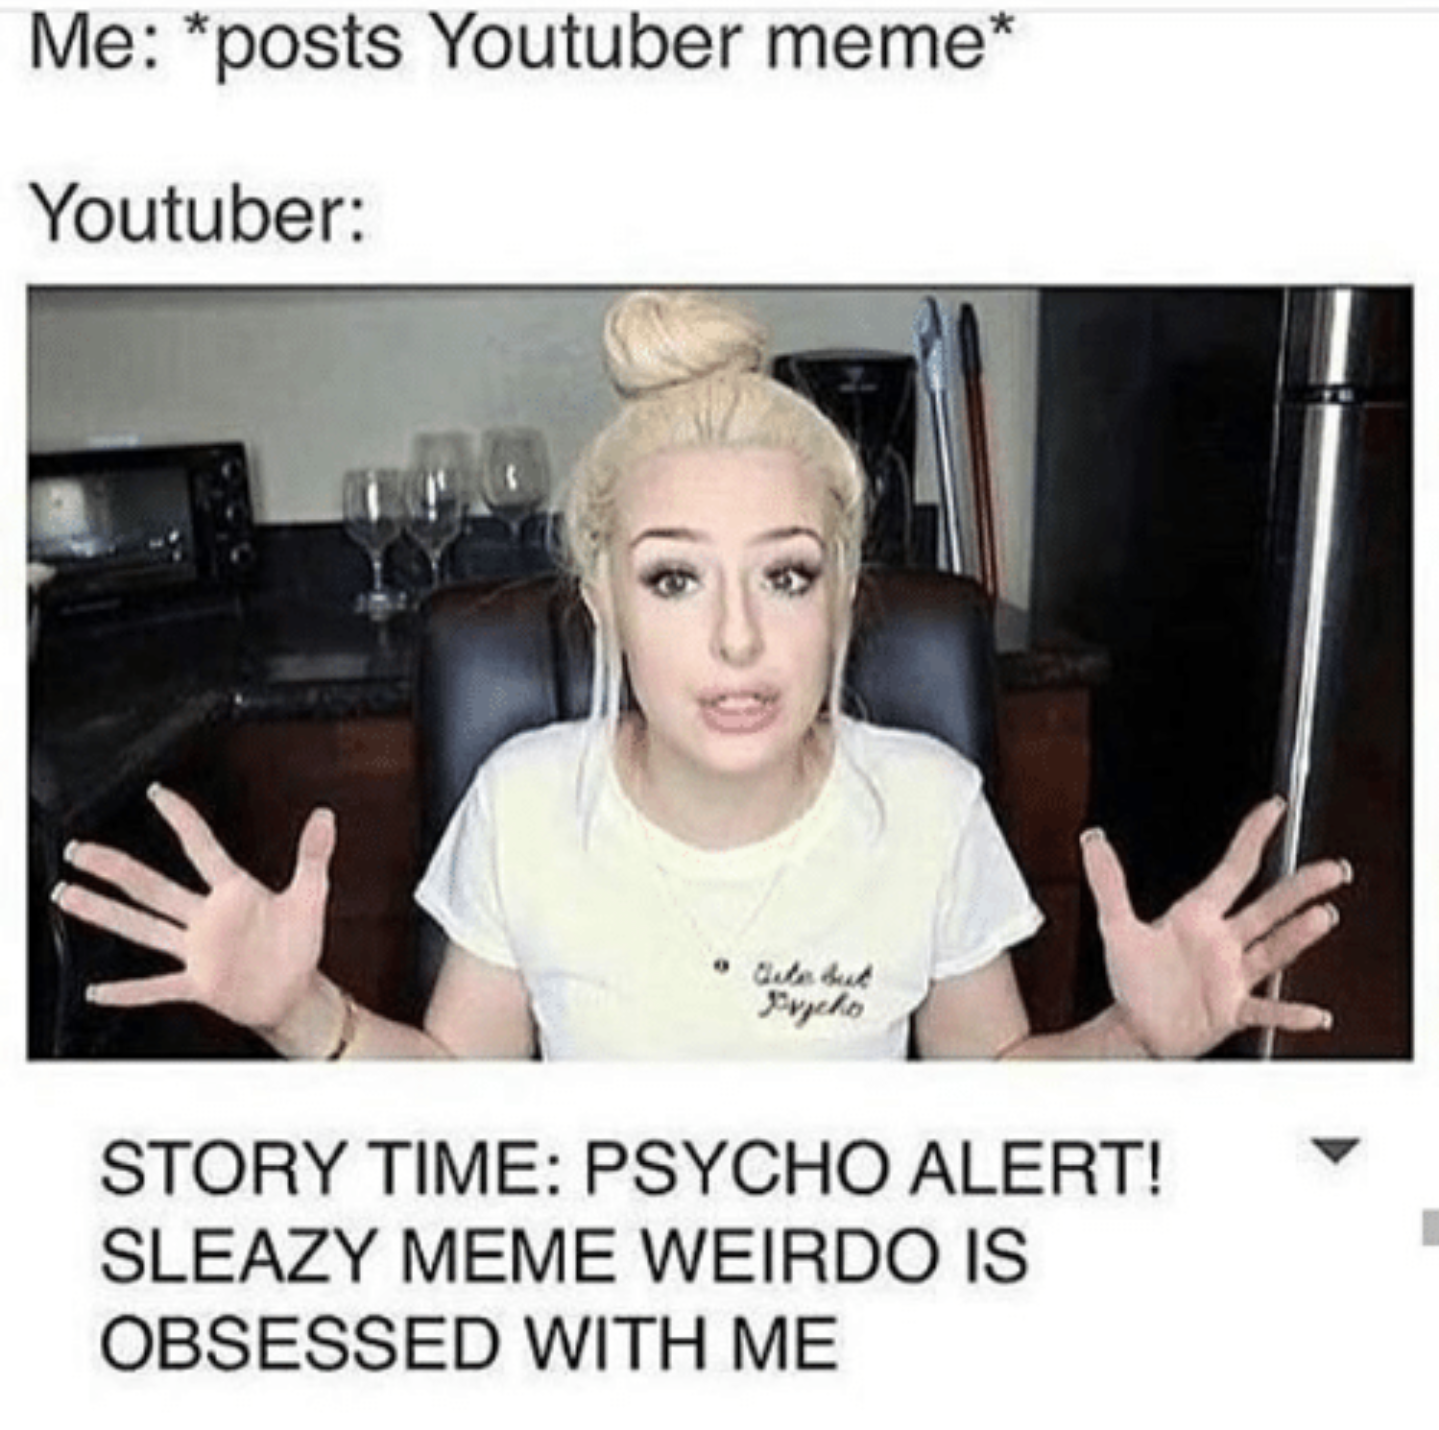 Meme of Youtuber over reacting to having youtuber meme posted